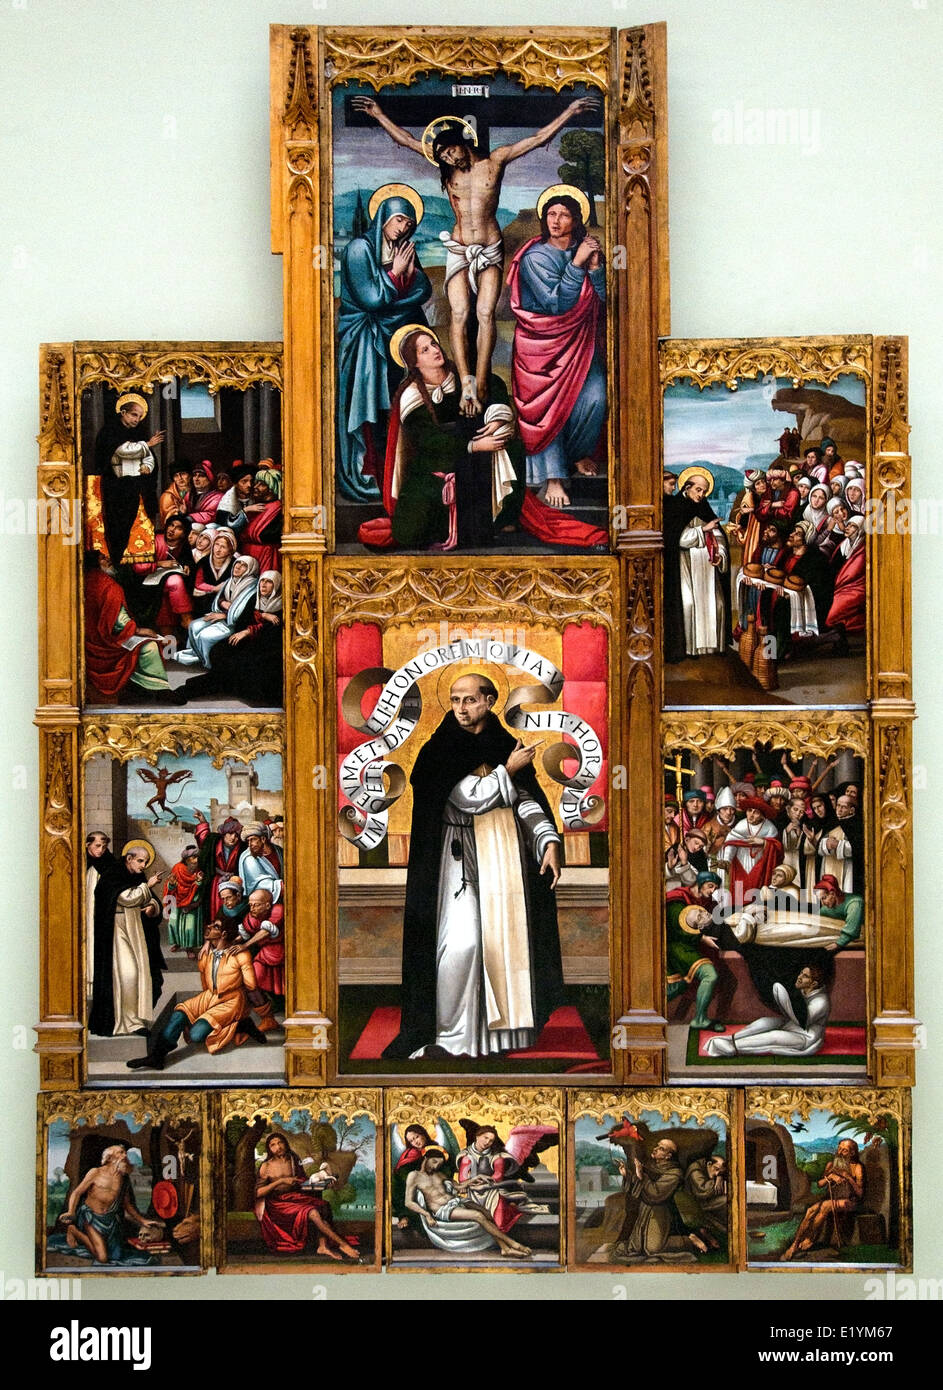 Altarbild von San Vicente Ferrer des 16. Jahrhunderts von Miguel Prado (Convento Dominico de San Onofre) Valenca) gotischen Spanien Spanisch Stockfoto